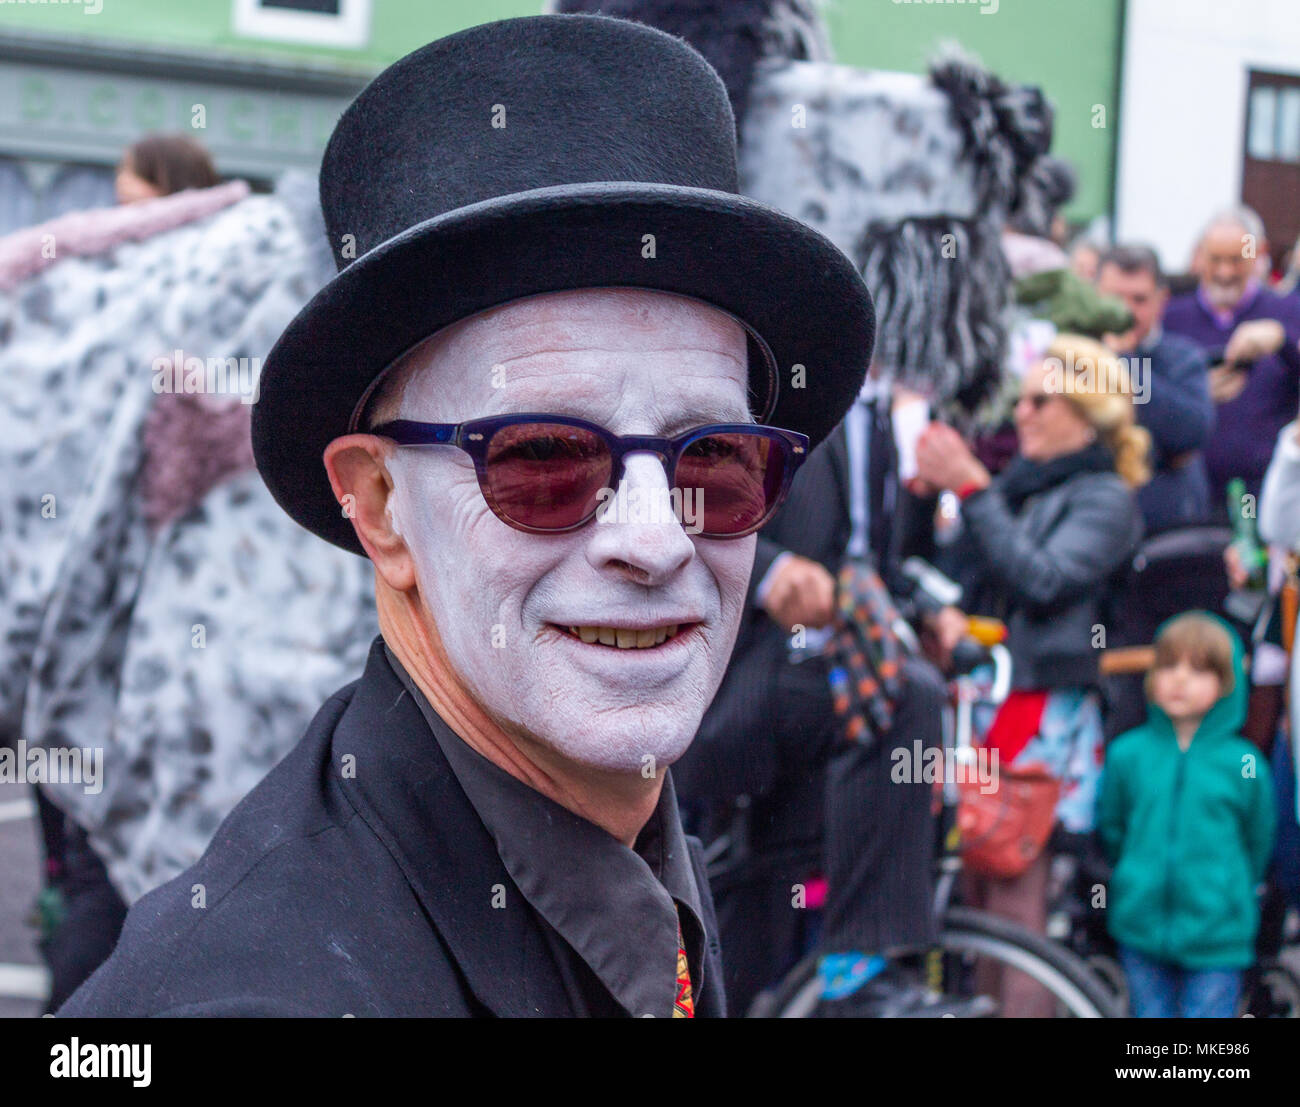 Homme avec maquillage visage de tout blanc avec des lunettes de soleil et costume noir prenant part à un festival de jazz street procession et parti à Ballydehob, Irlande Banque D'Images